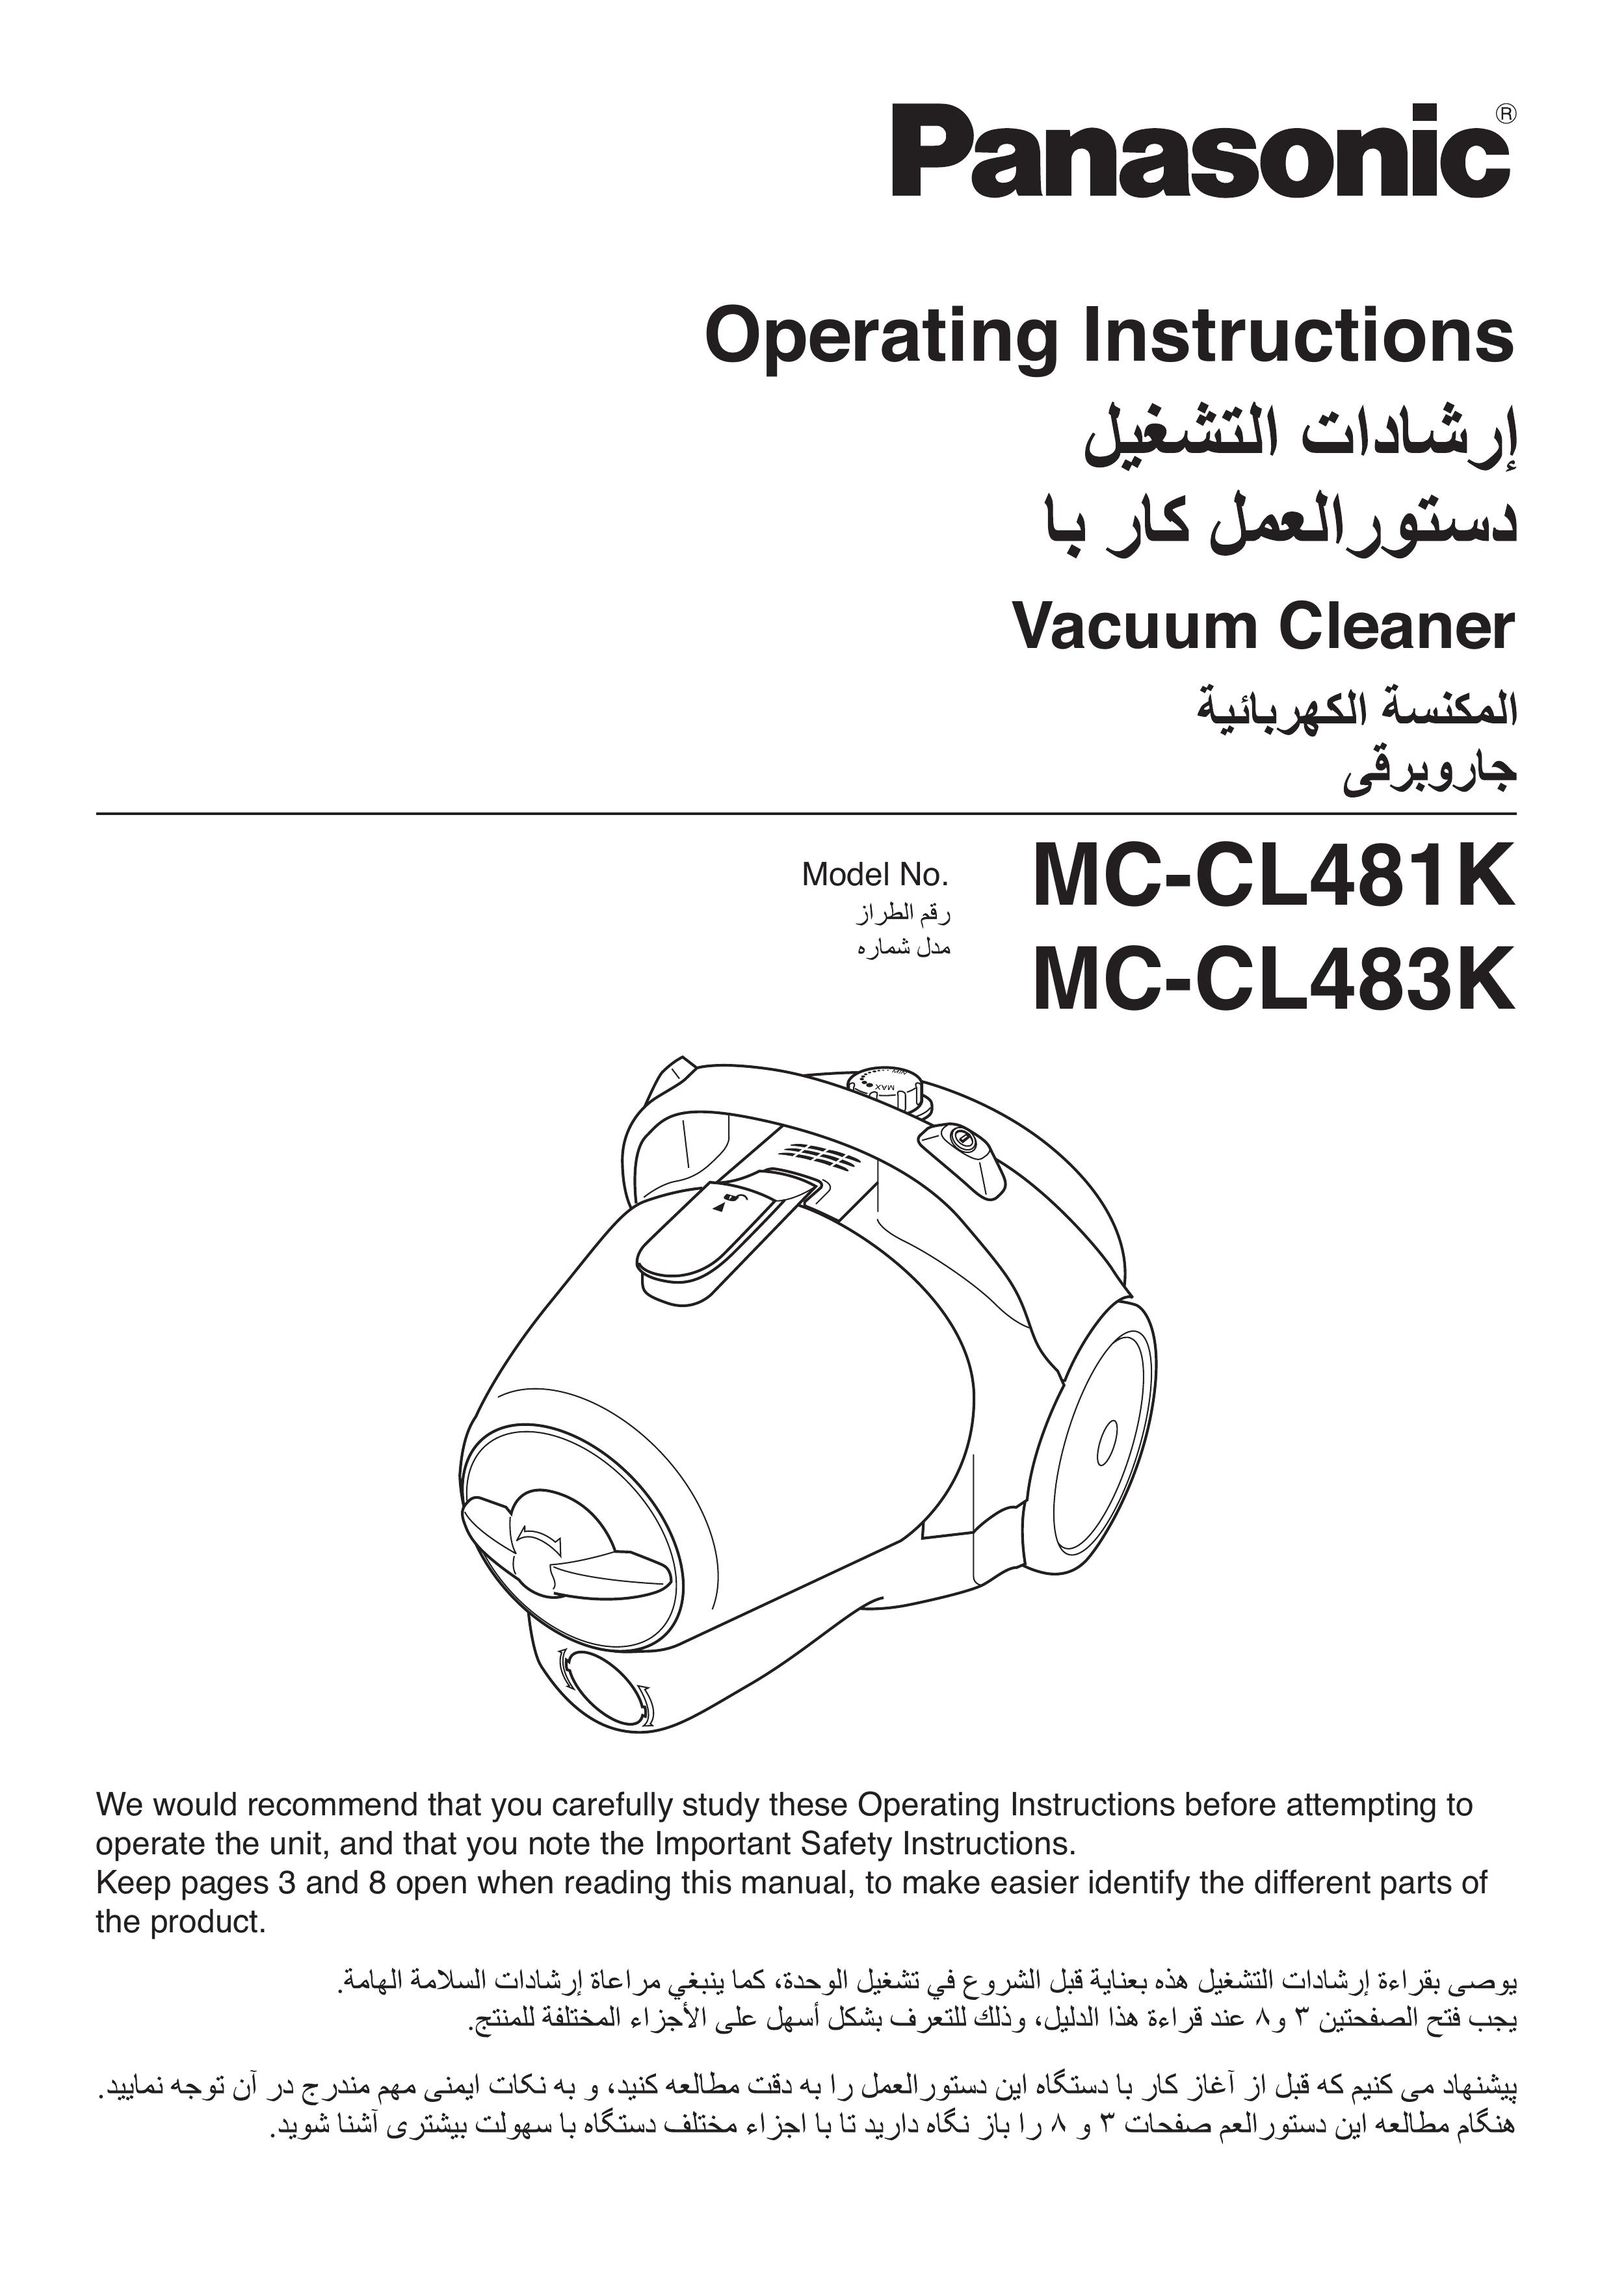 Panasonic MC-CL483K Vacuum Cleaner User Manual